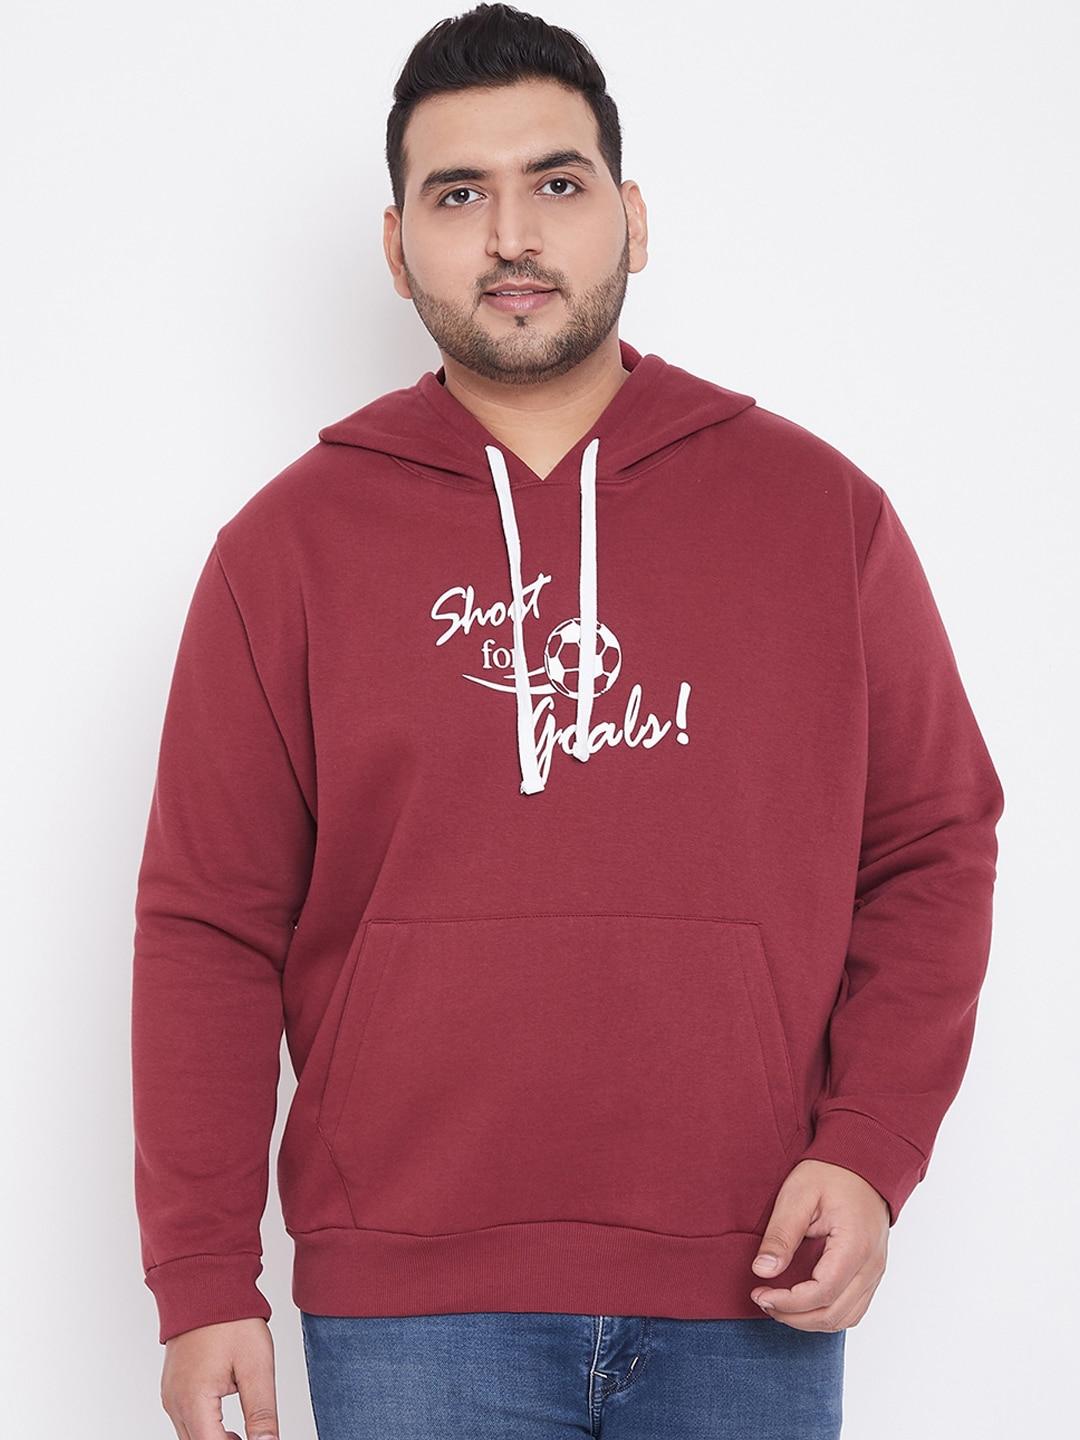 instafab-plus-men-maroon-typography-printed-hooded-sweatshirt